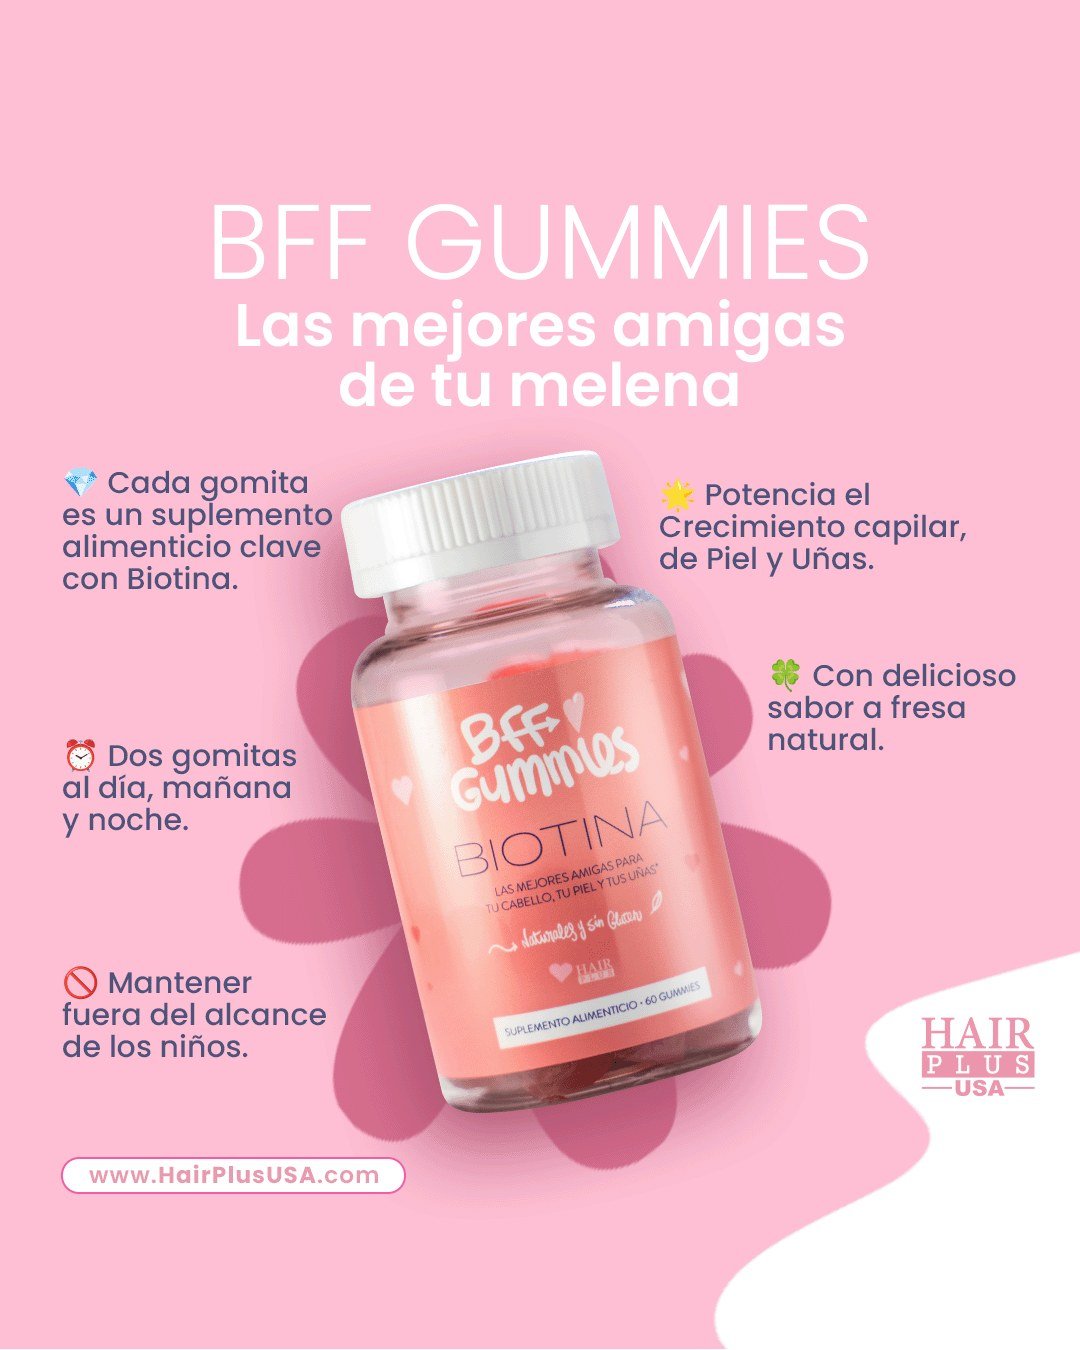 BFF GUMMIES: Las mejores amigas de tu cabello 🌸, nuestras BFF gummies a base de biotina que no solo te ayudar&aacute;n a estimular el crecimiento del cabello, tambi&eacute;n de tus cejas y pesta&ntilde;as.🌱🍓

🌟 Potencia Crecimiento, Piel y U&ntil